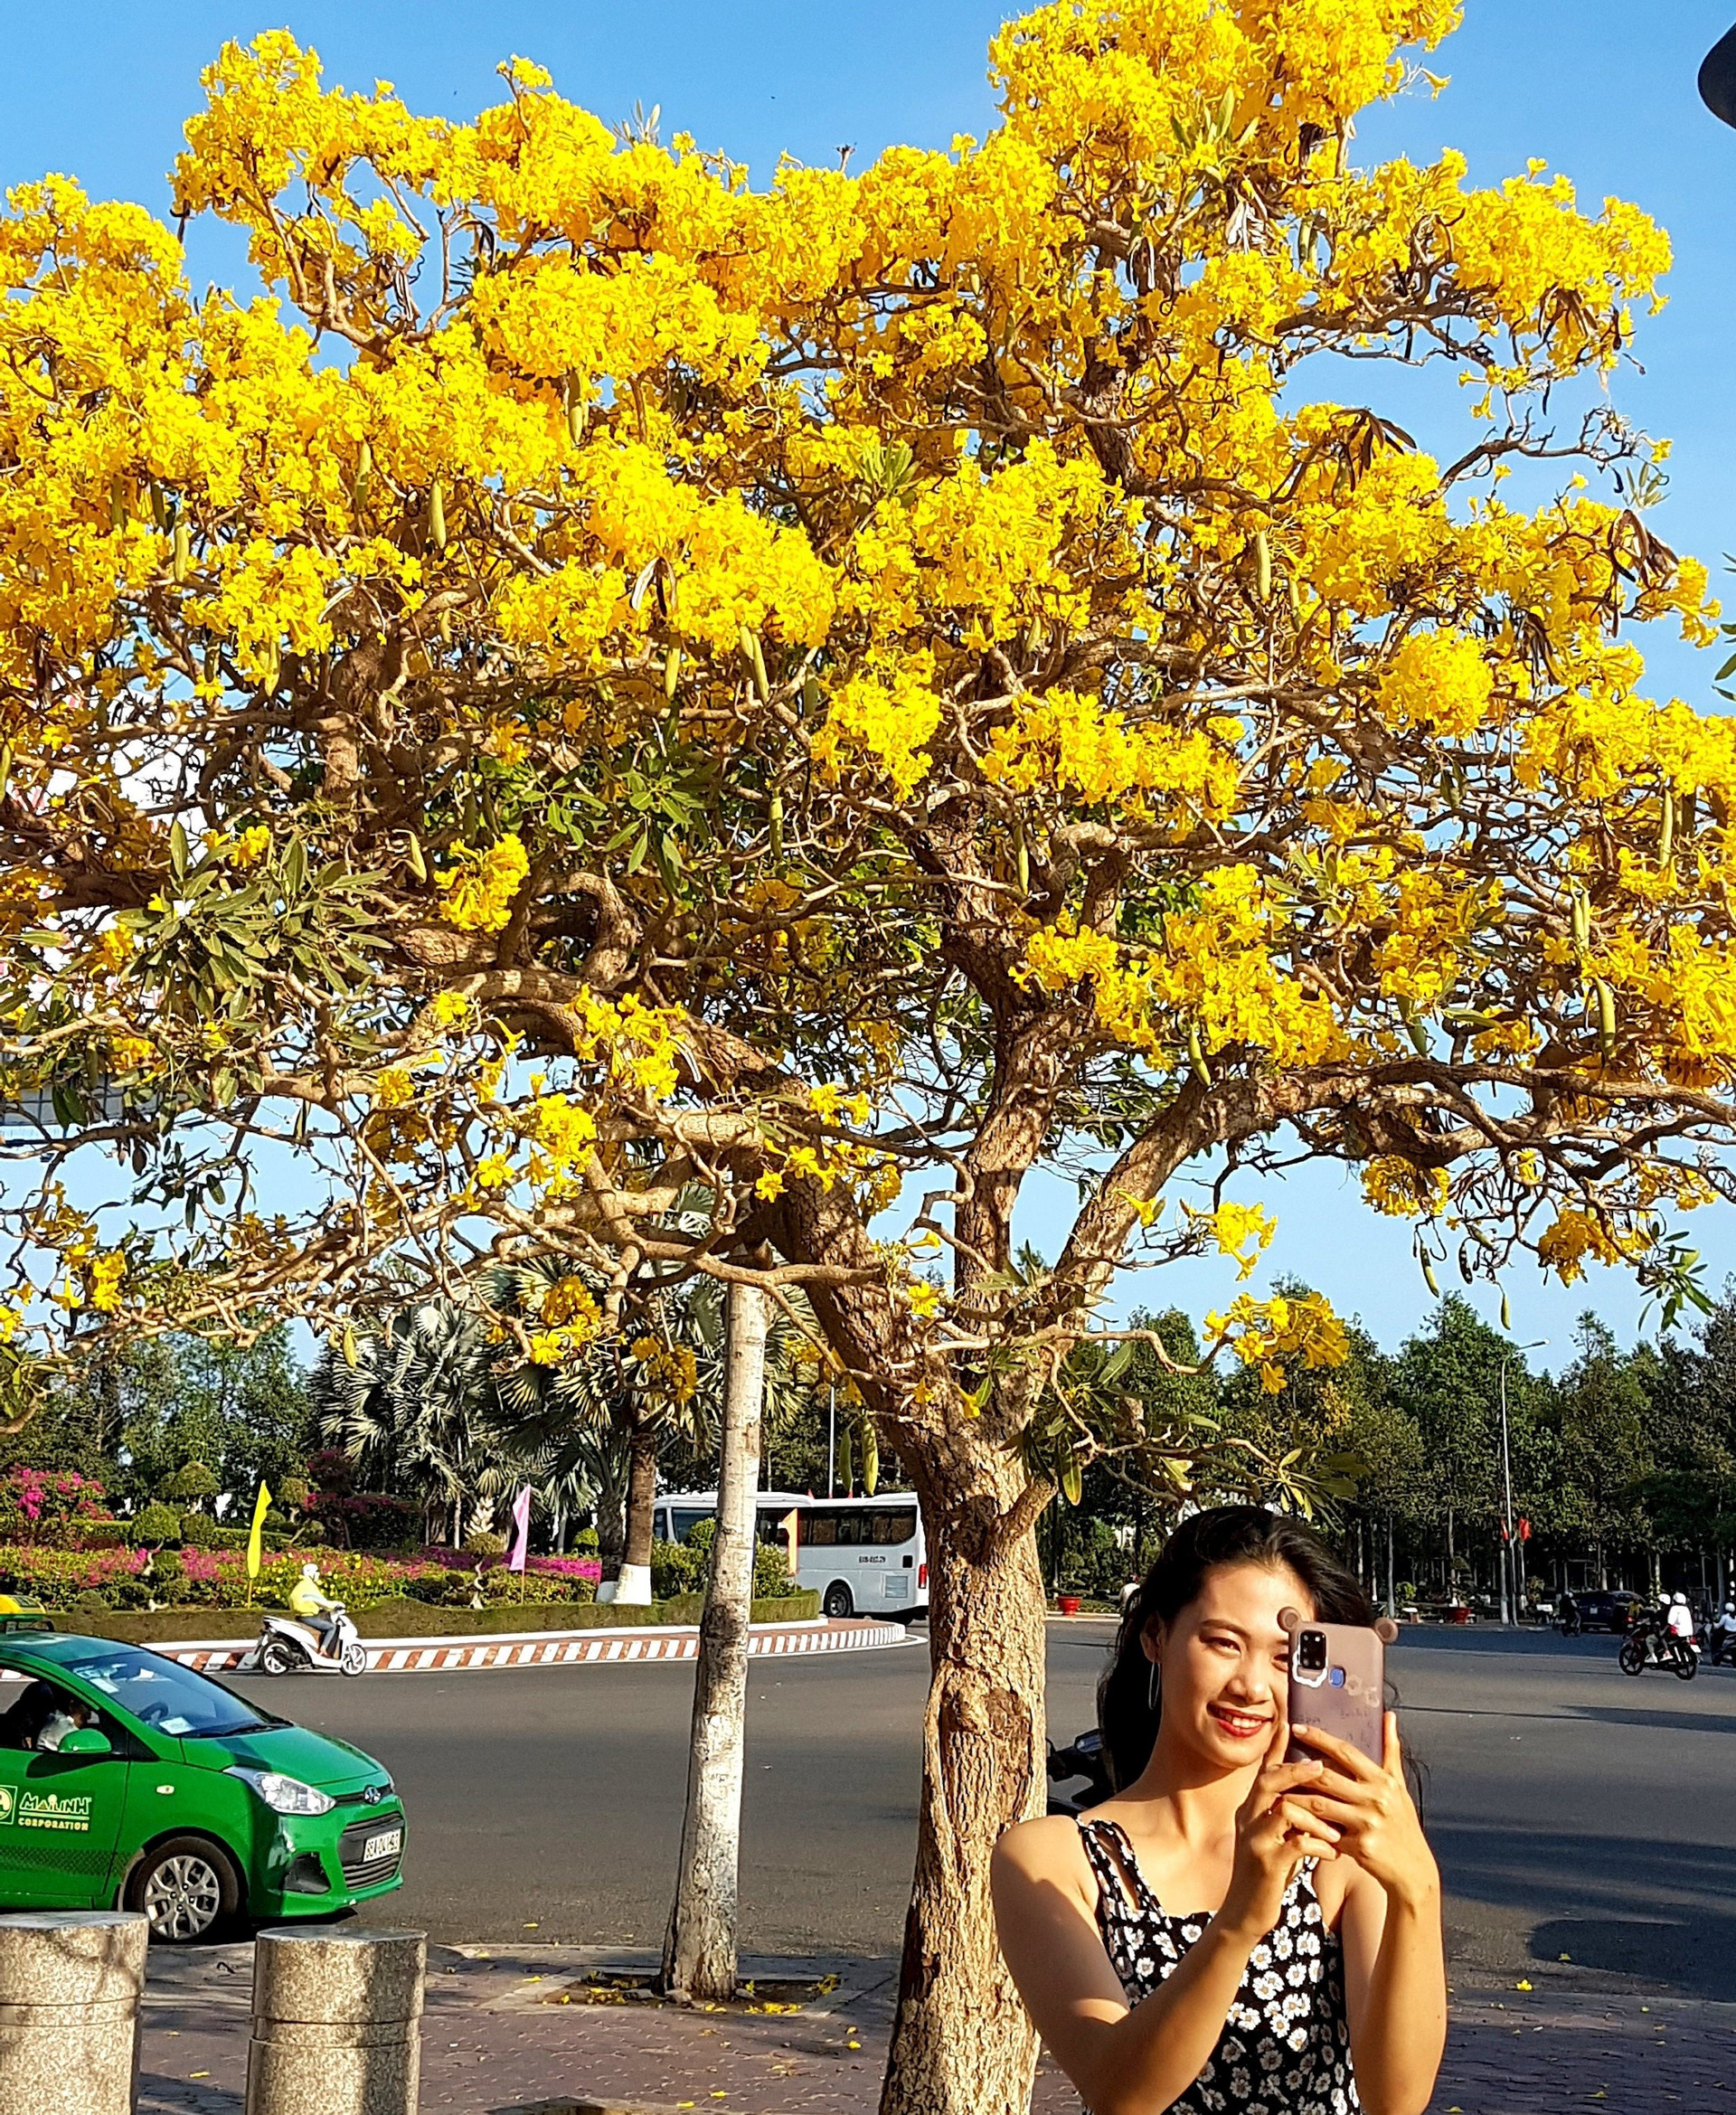 Ven đường phố ở Phan Thiết của Bình Thuận có một thứ cây tên lạ treo rủ hoa vàng, ai cũng ngắm nhìn đắm say - Ảnh 2.